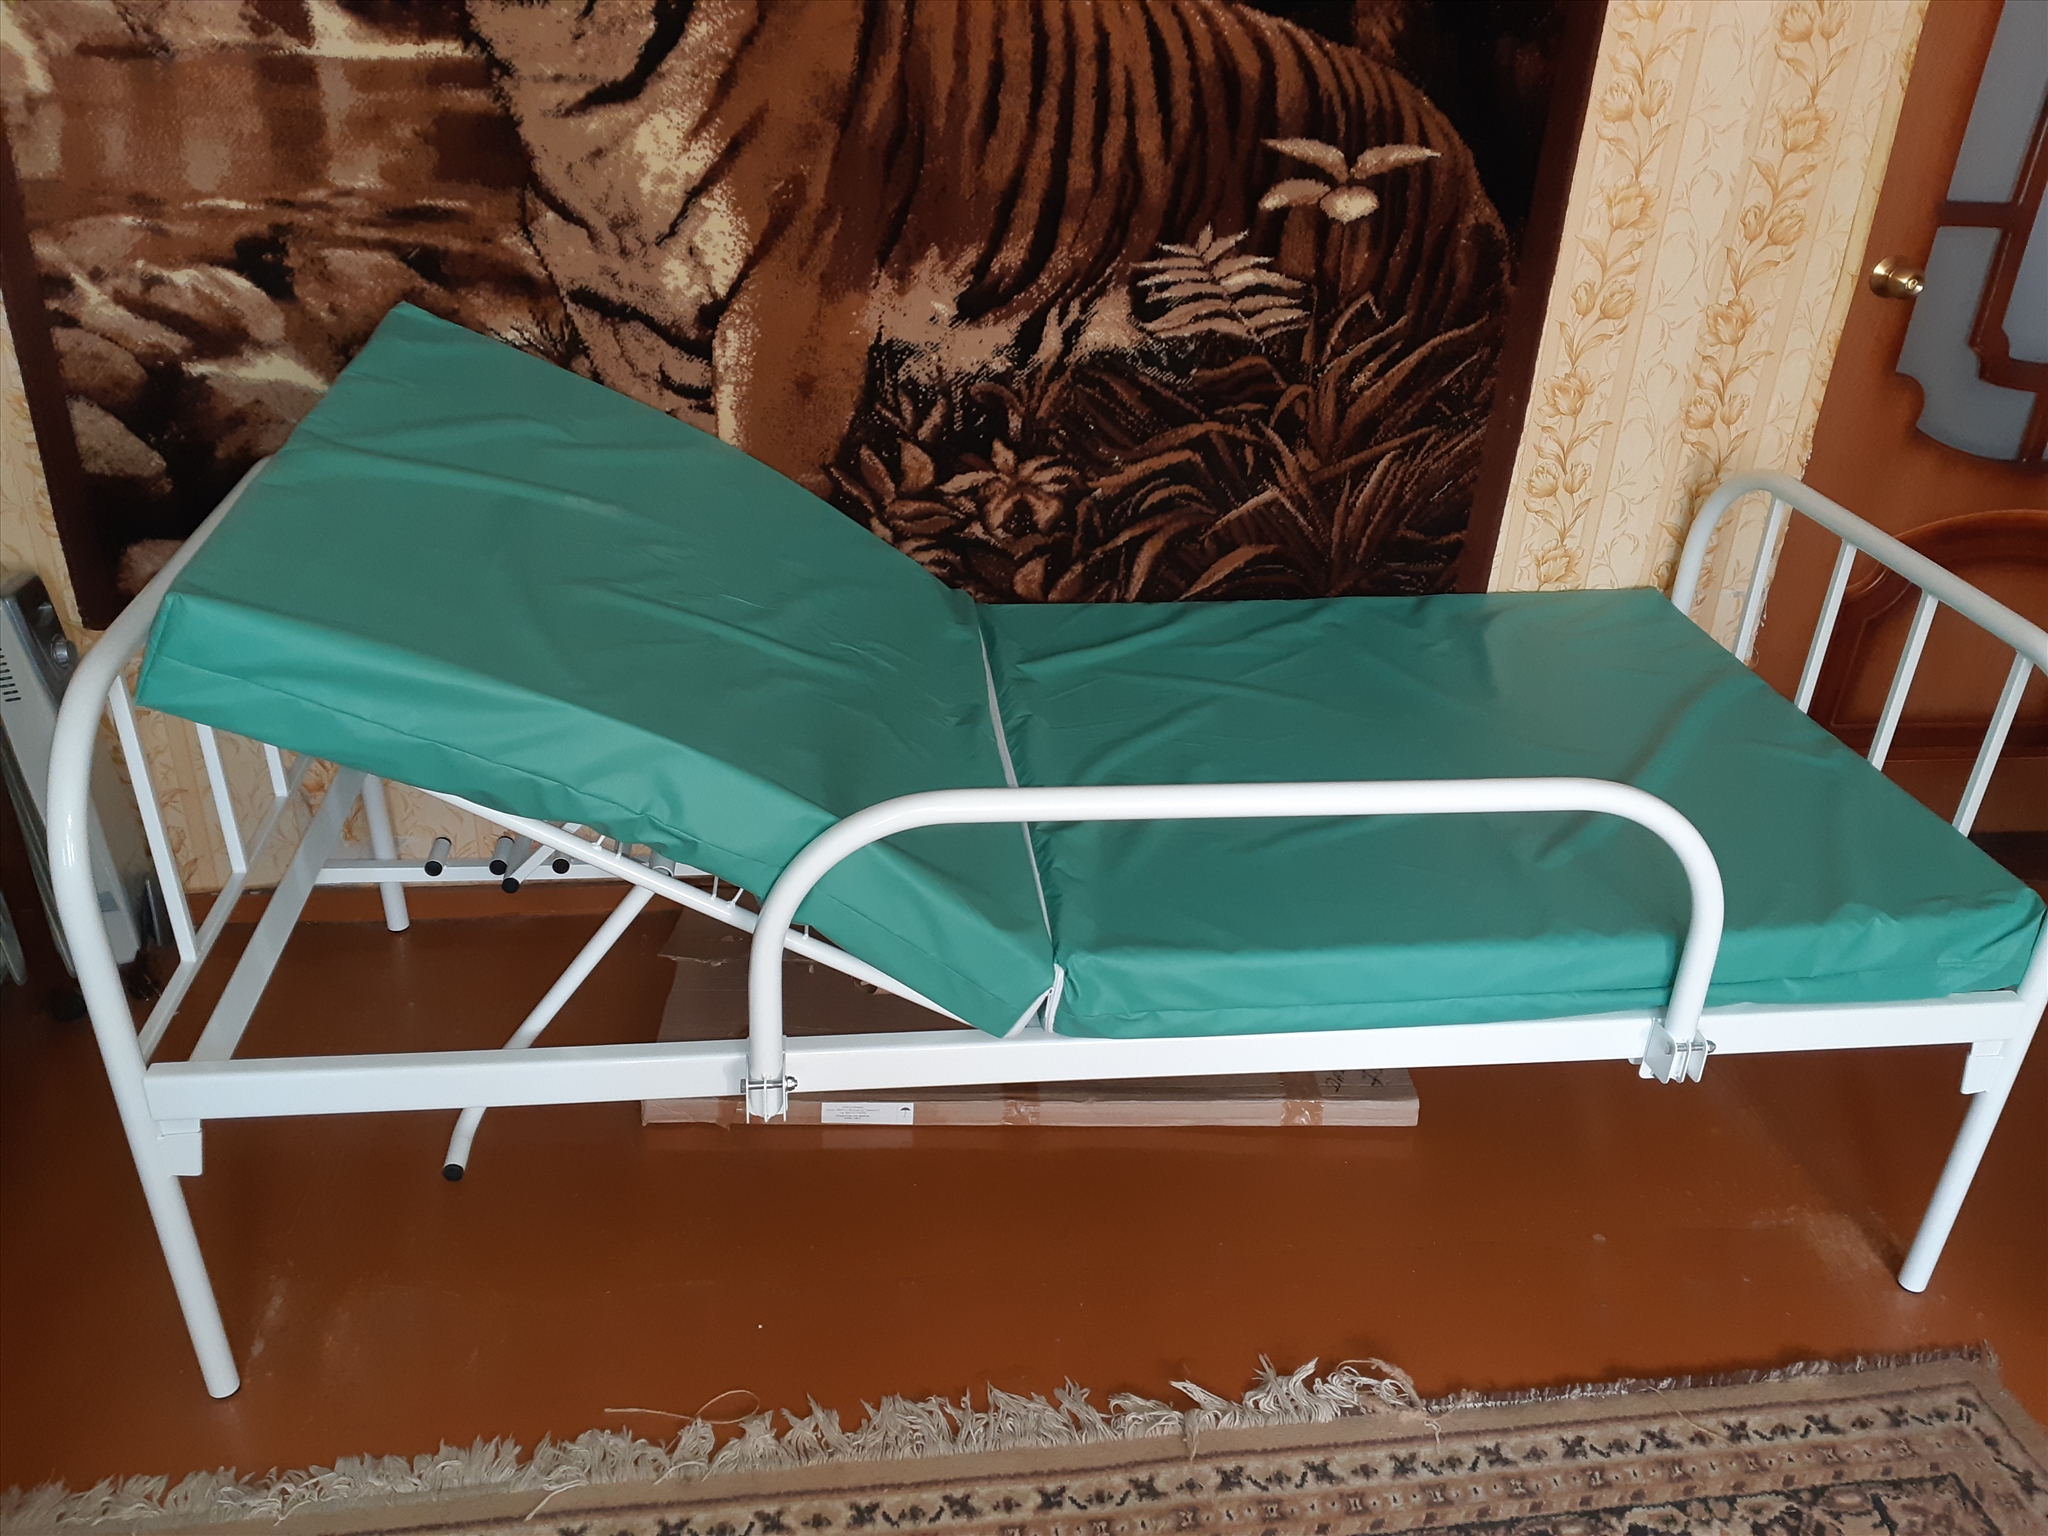 юла медицинская кровать для лежачих больных